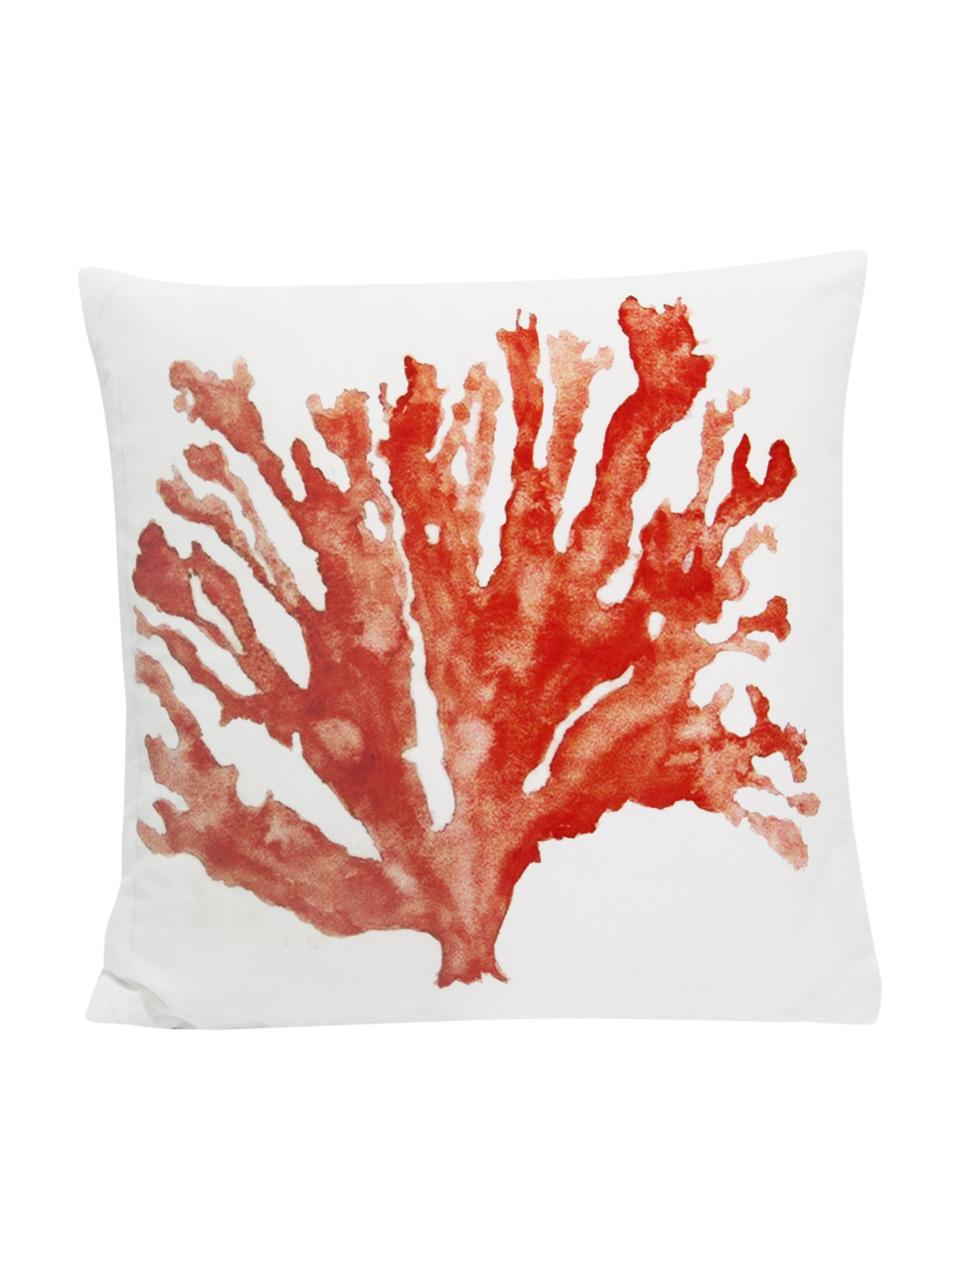 Dwustronna poszewka na poduszkę Coral, 100% poliester, Biały, koralowy, S 45 x D 45 cm